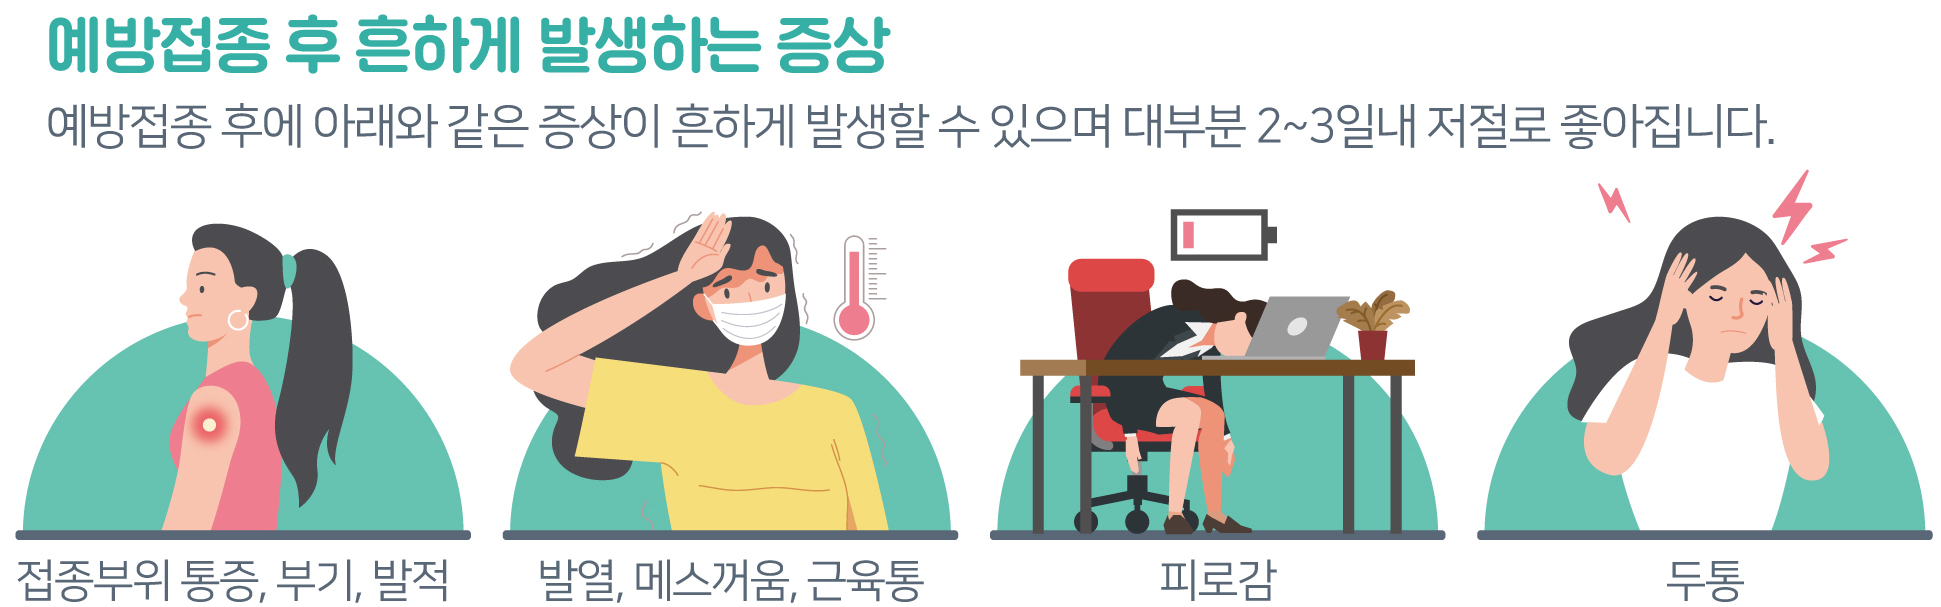 코로나 백신 부작용 증상 현황 총정리 (+아스트라제네카 보상 ...